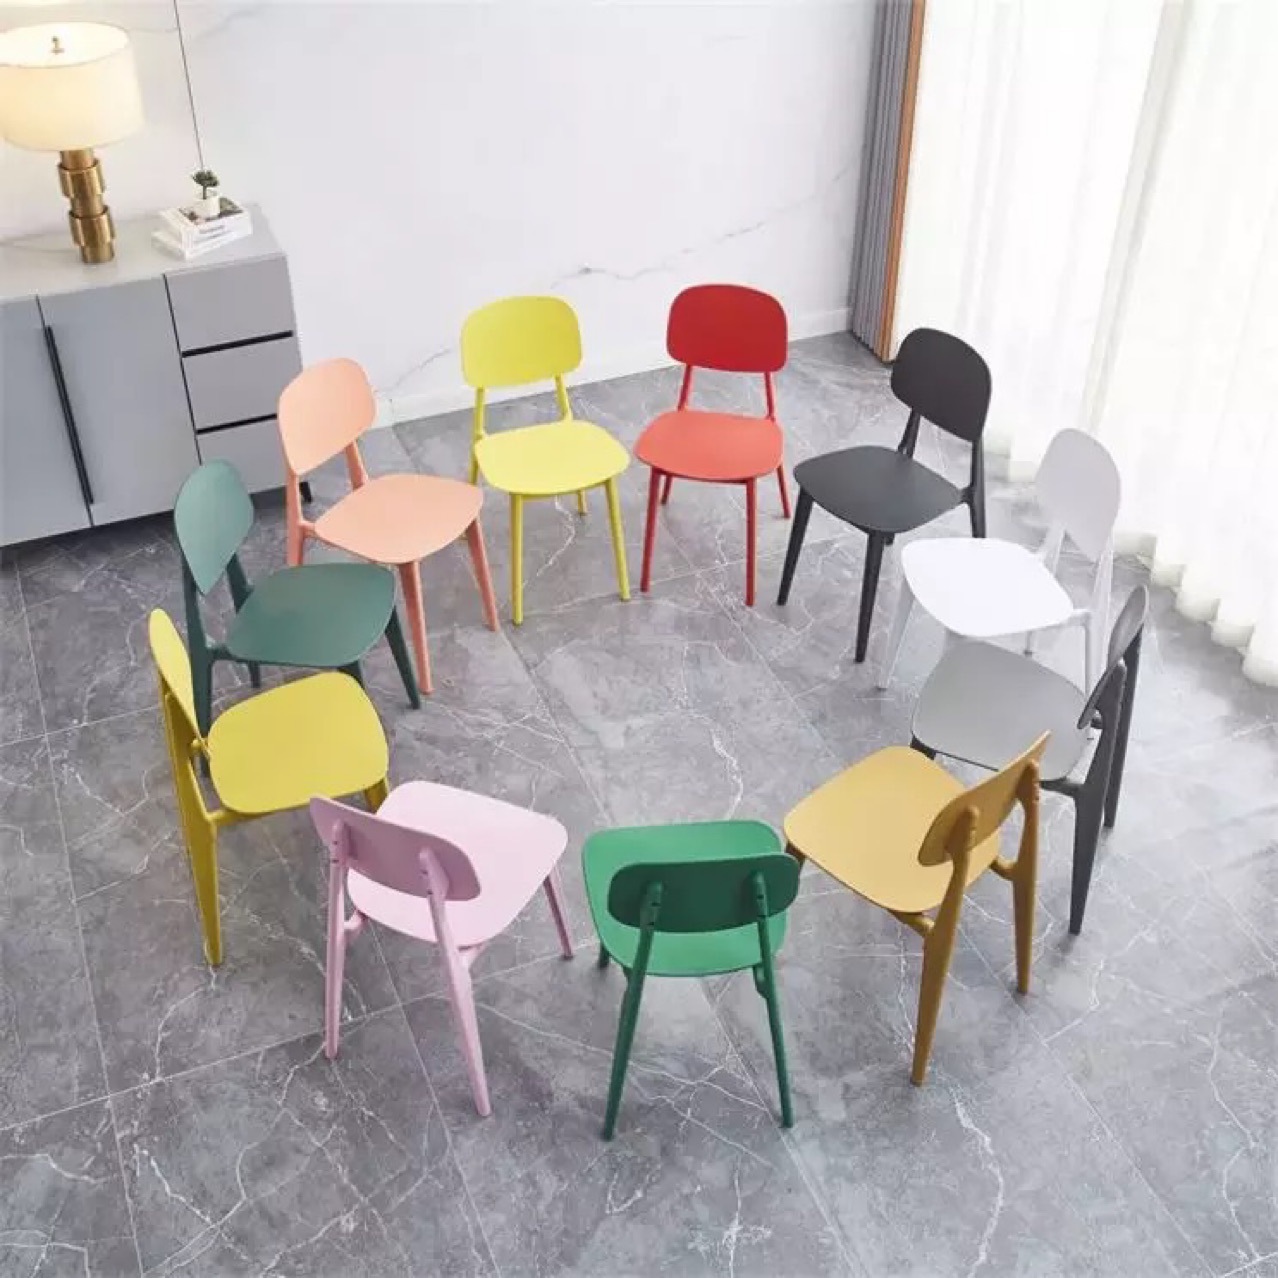 员工餐厅食堂桌椅注塑塑料洽谈 马卡龙椅奶茶店甜品店 PP餐椅组合